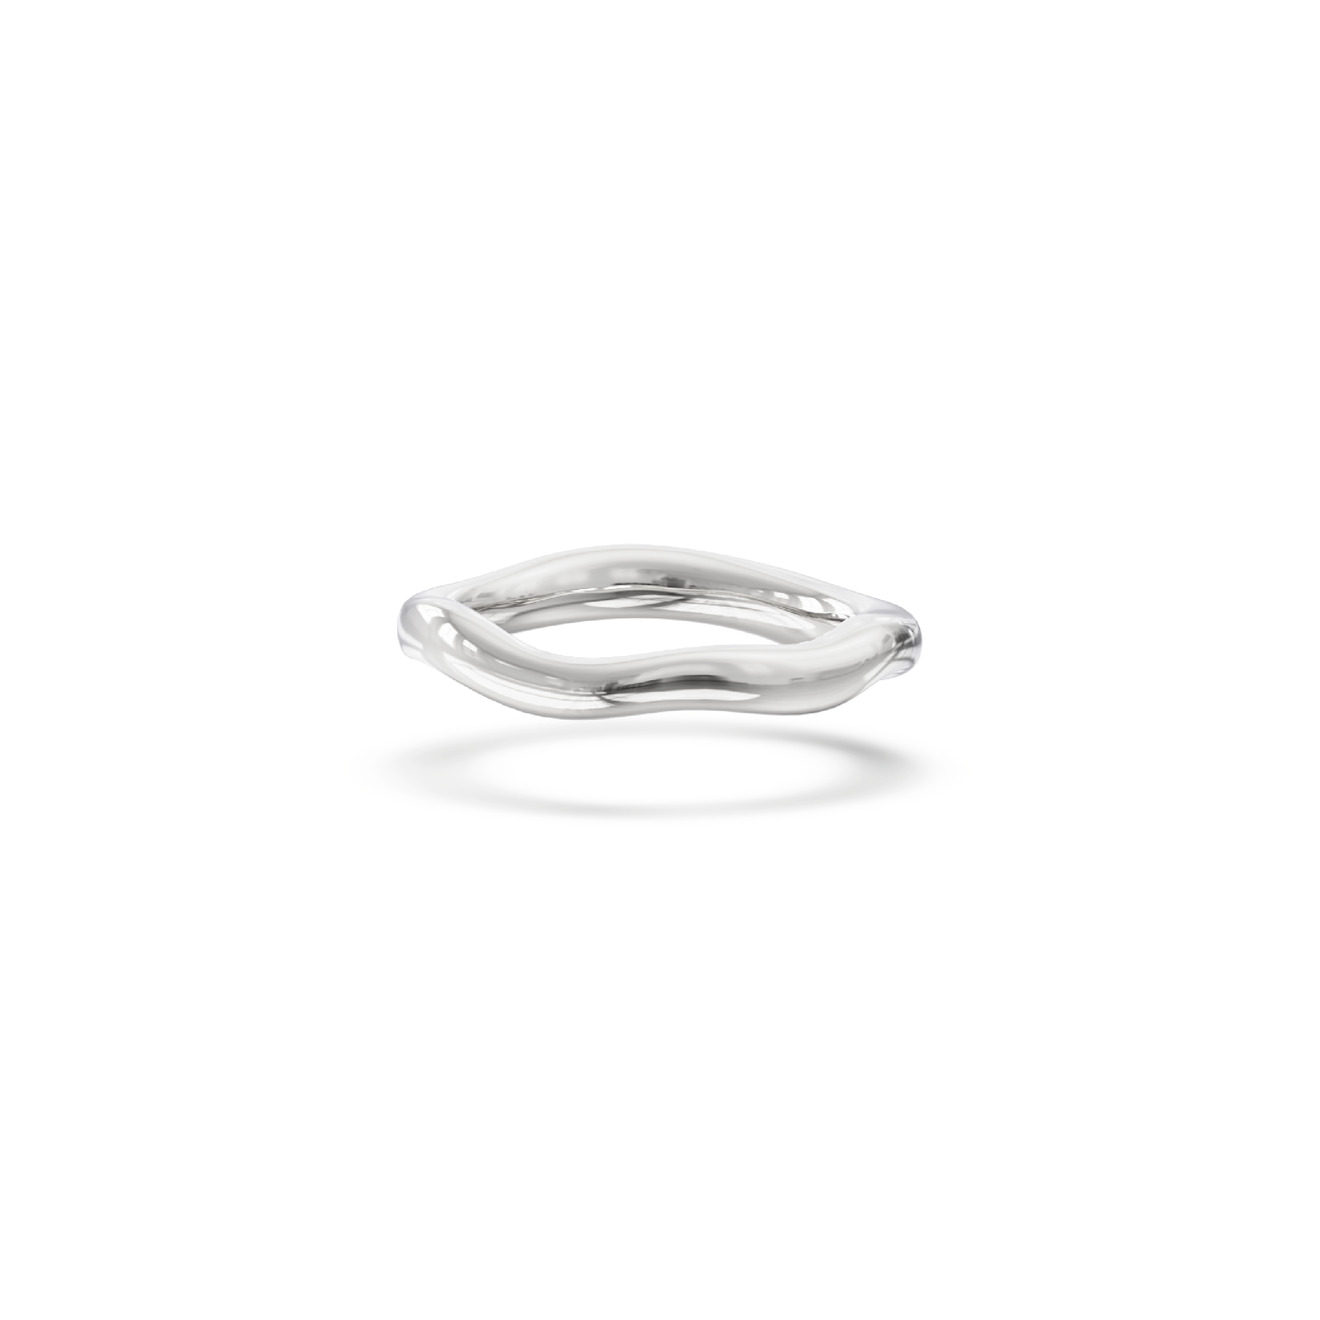 Jewlia Базовое серебряное кольцо Bubble gum кольцо серебряное mie базовое 18 размер